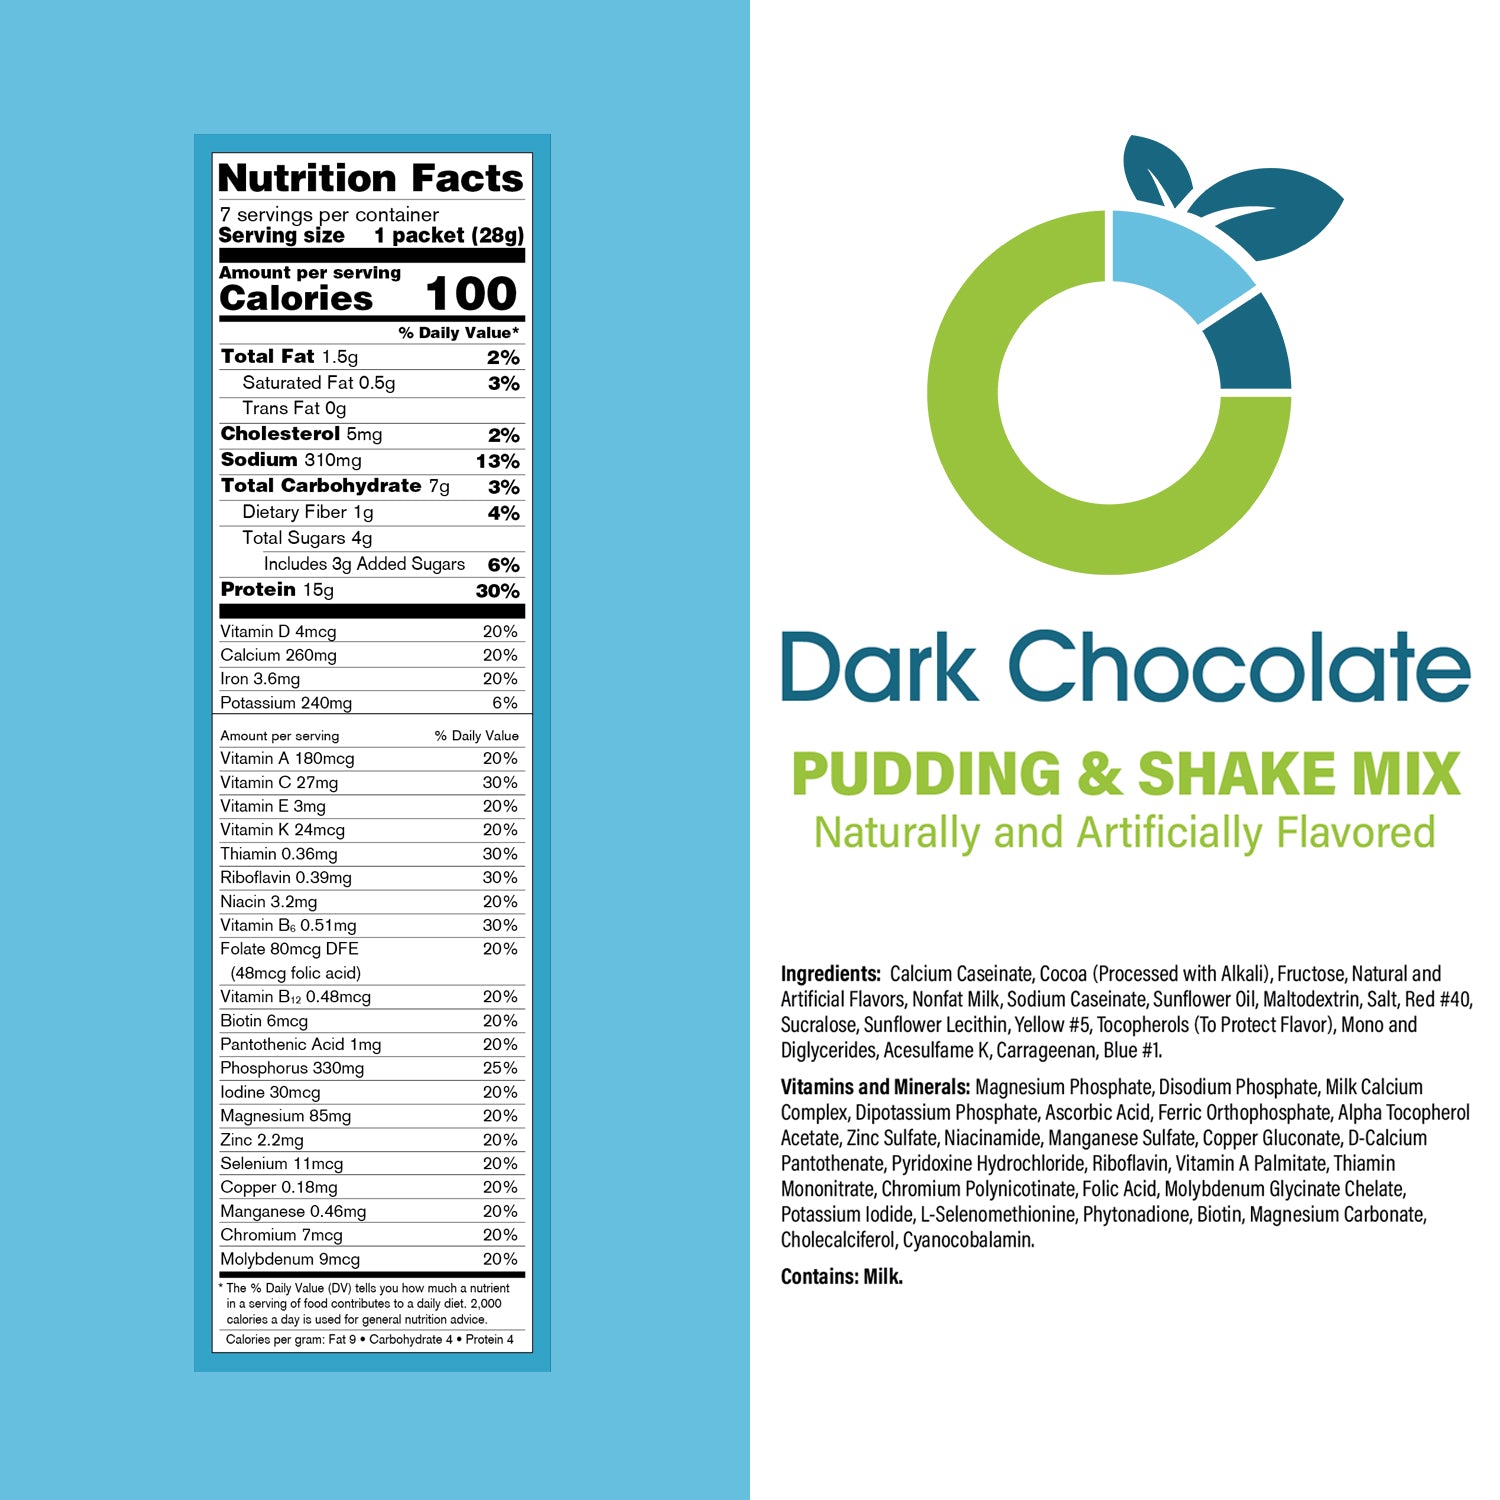 Dark Chocolate Pudding & Shake Mix